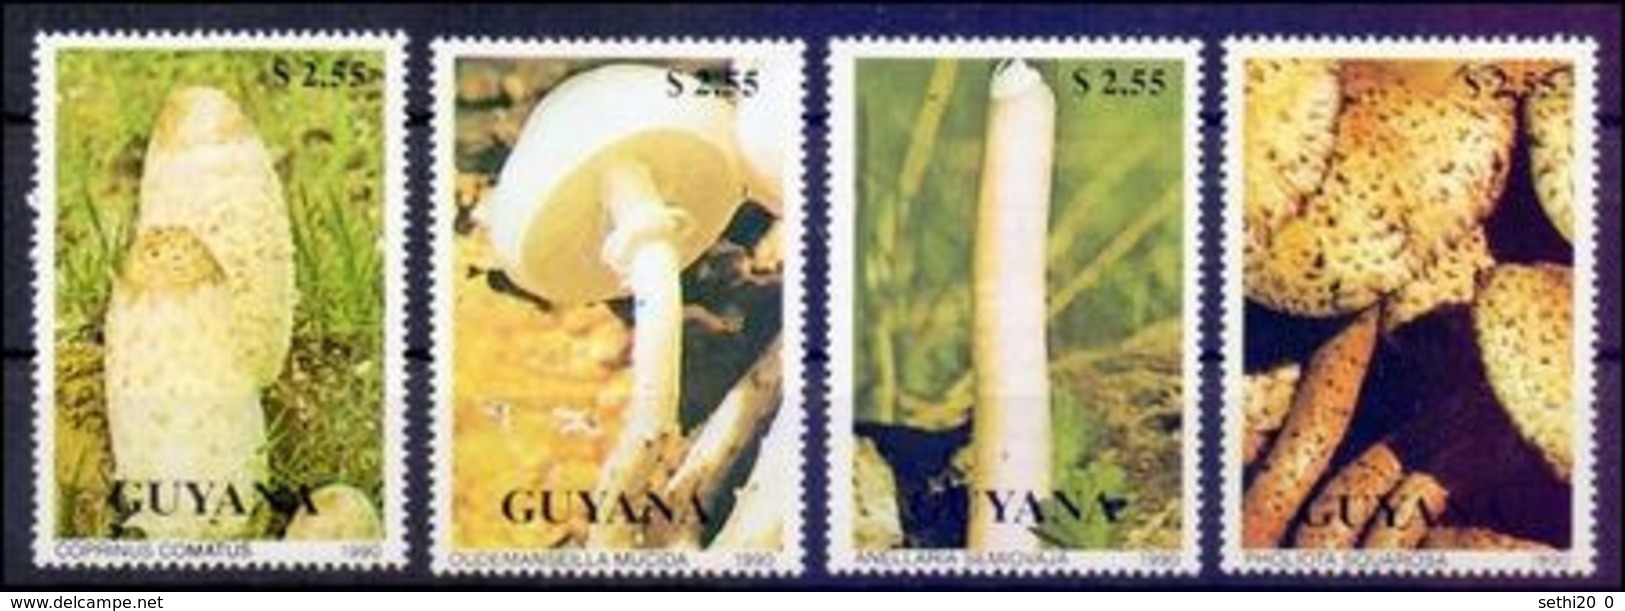 Guyane 1990  Mushrooms Champignons MNH - Champignons